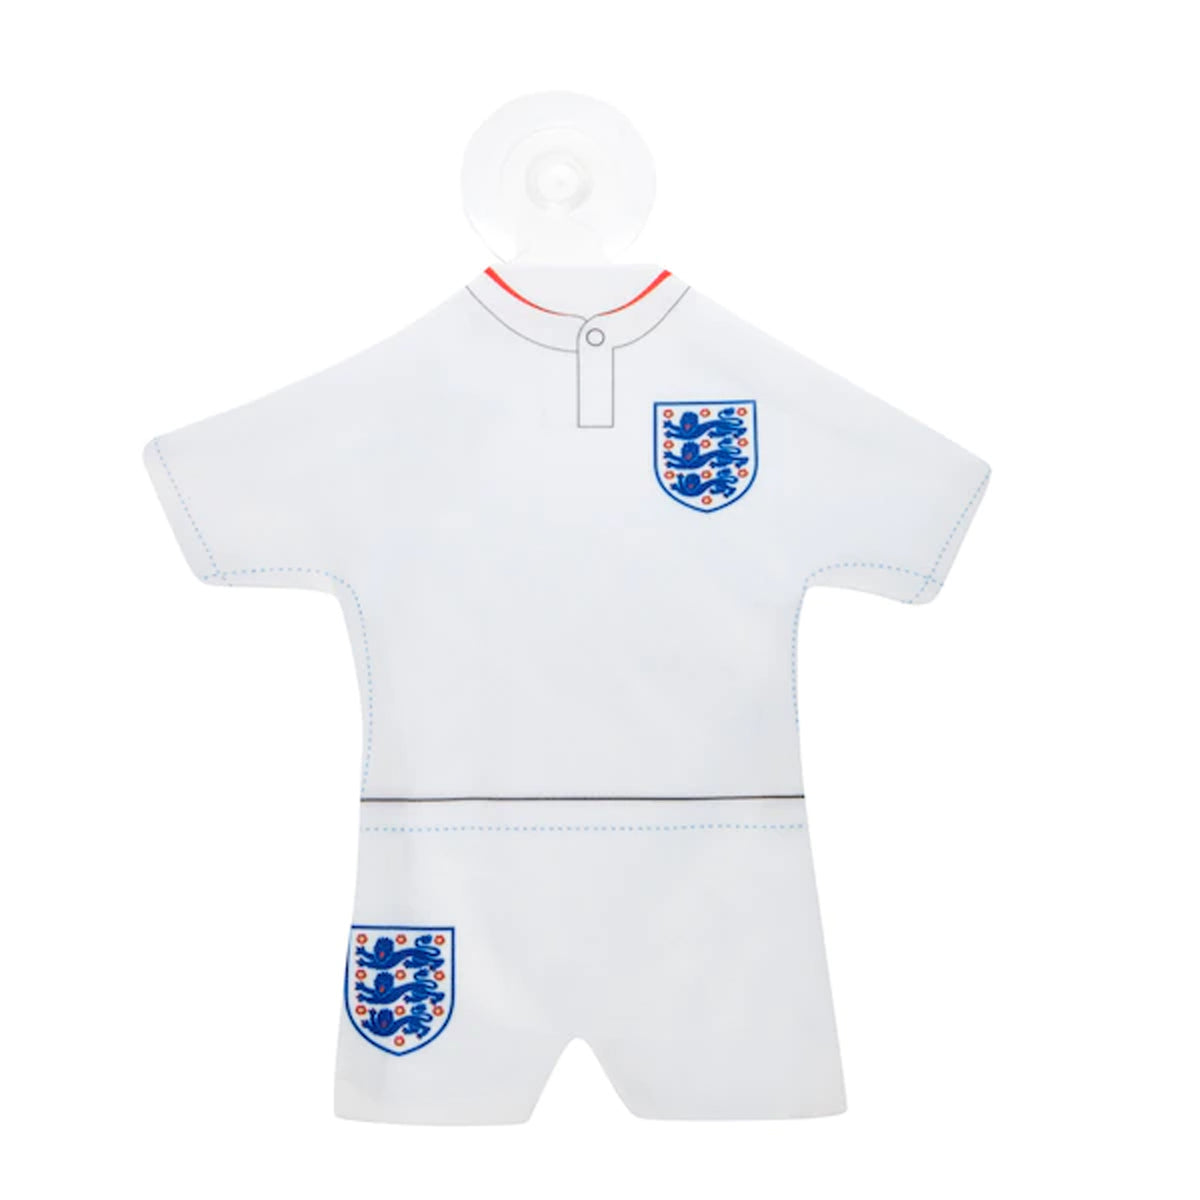 England National Team Mini Kit Crest Car Hanger